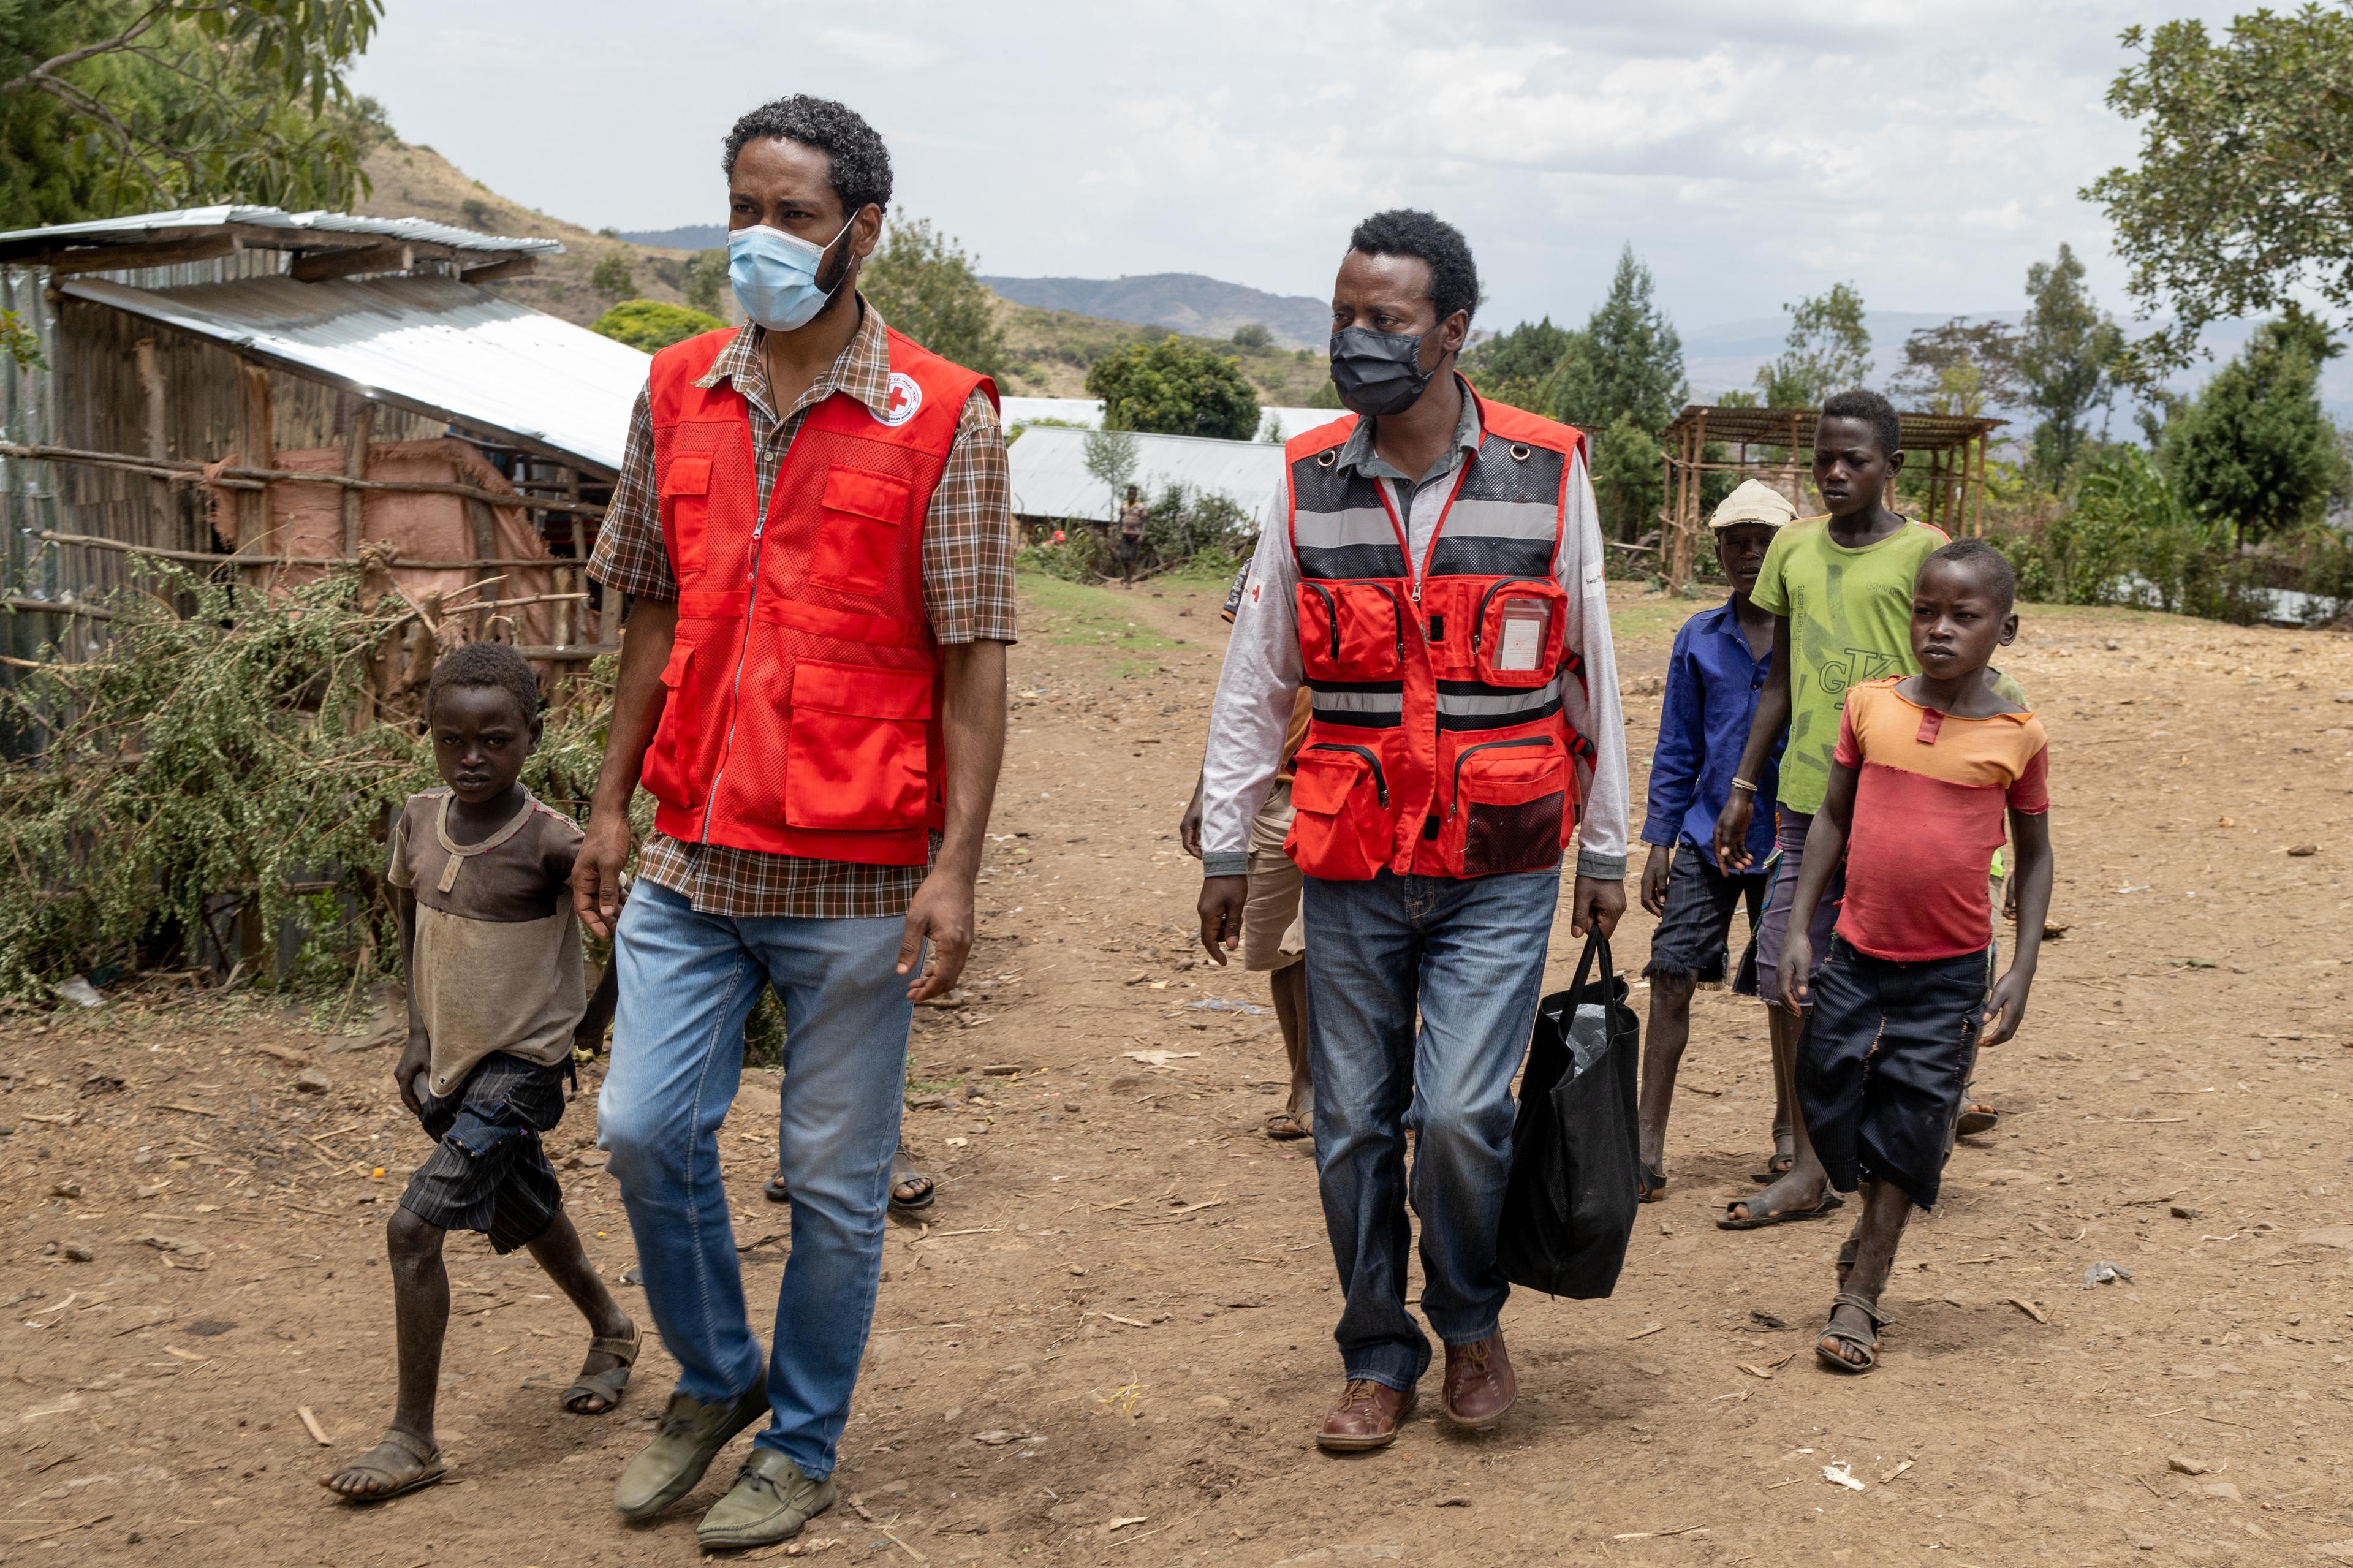 Tre uomini e quattro ragazzi camminano nel villaggio di Kola, in Etiopia; sullo sfondo si vedono alcune capanne.